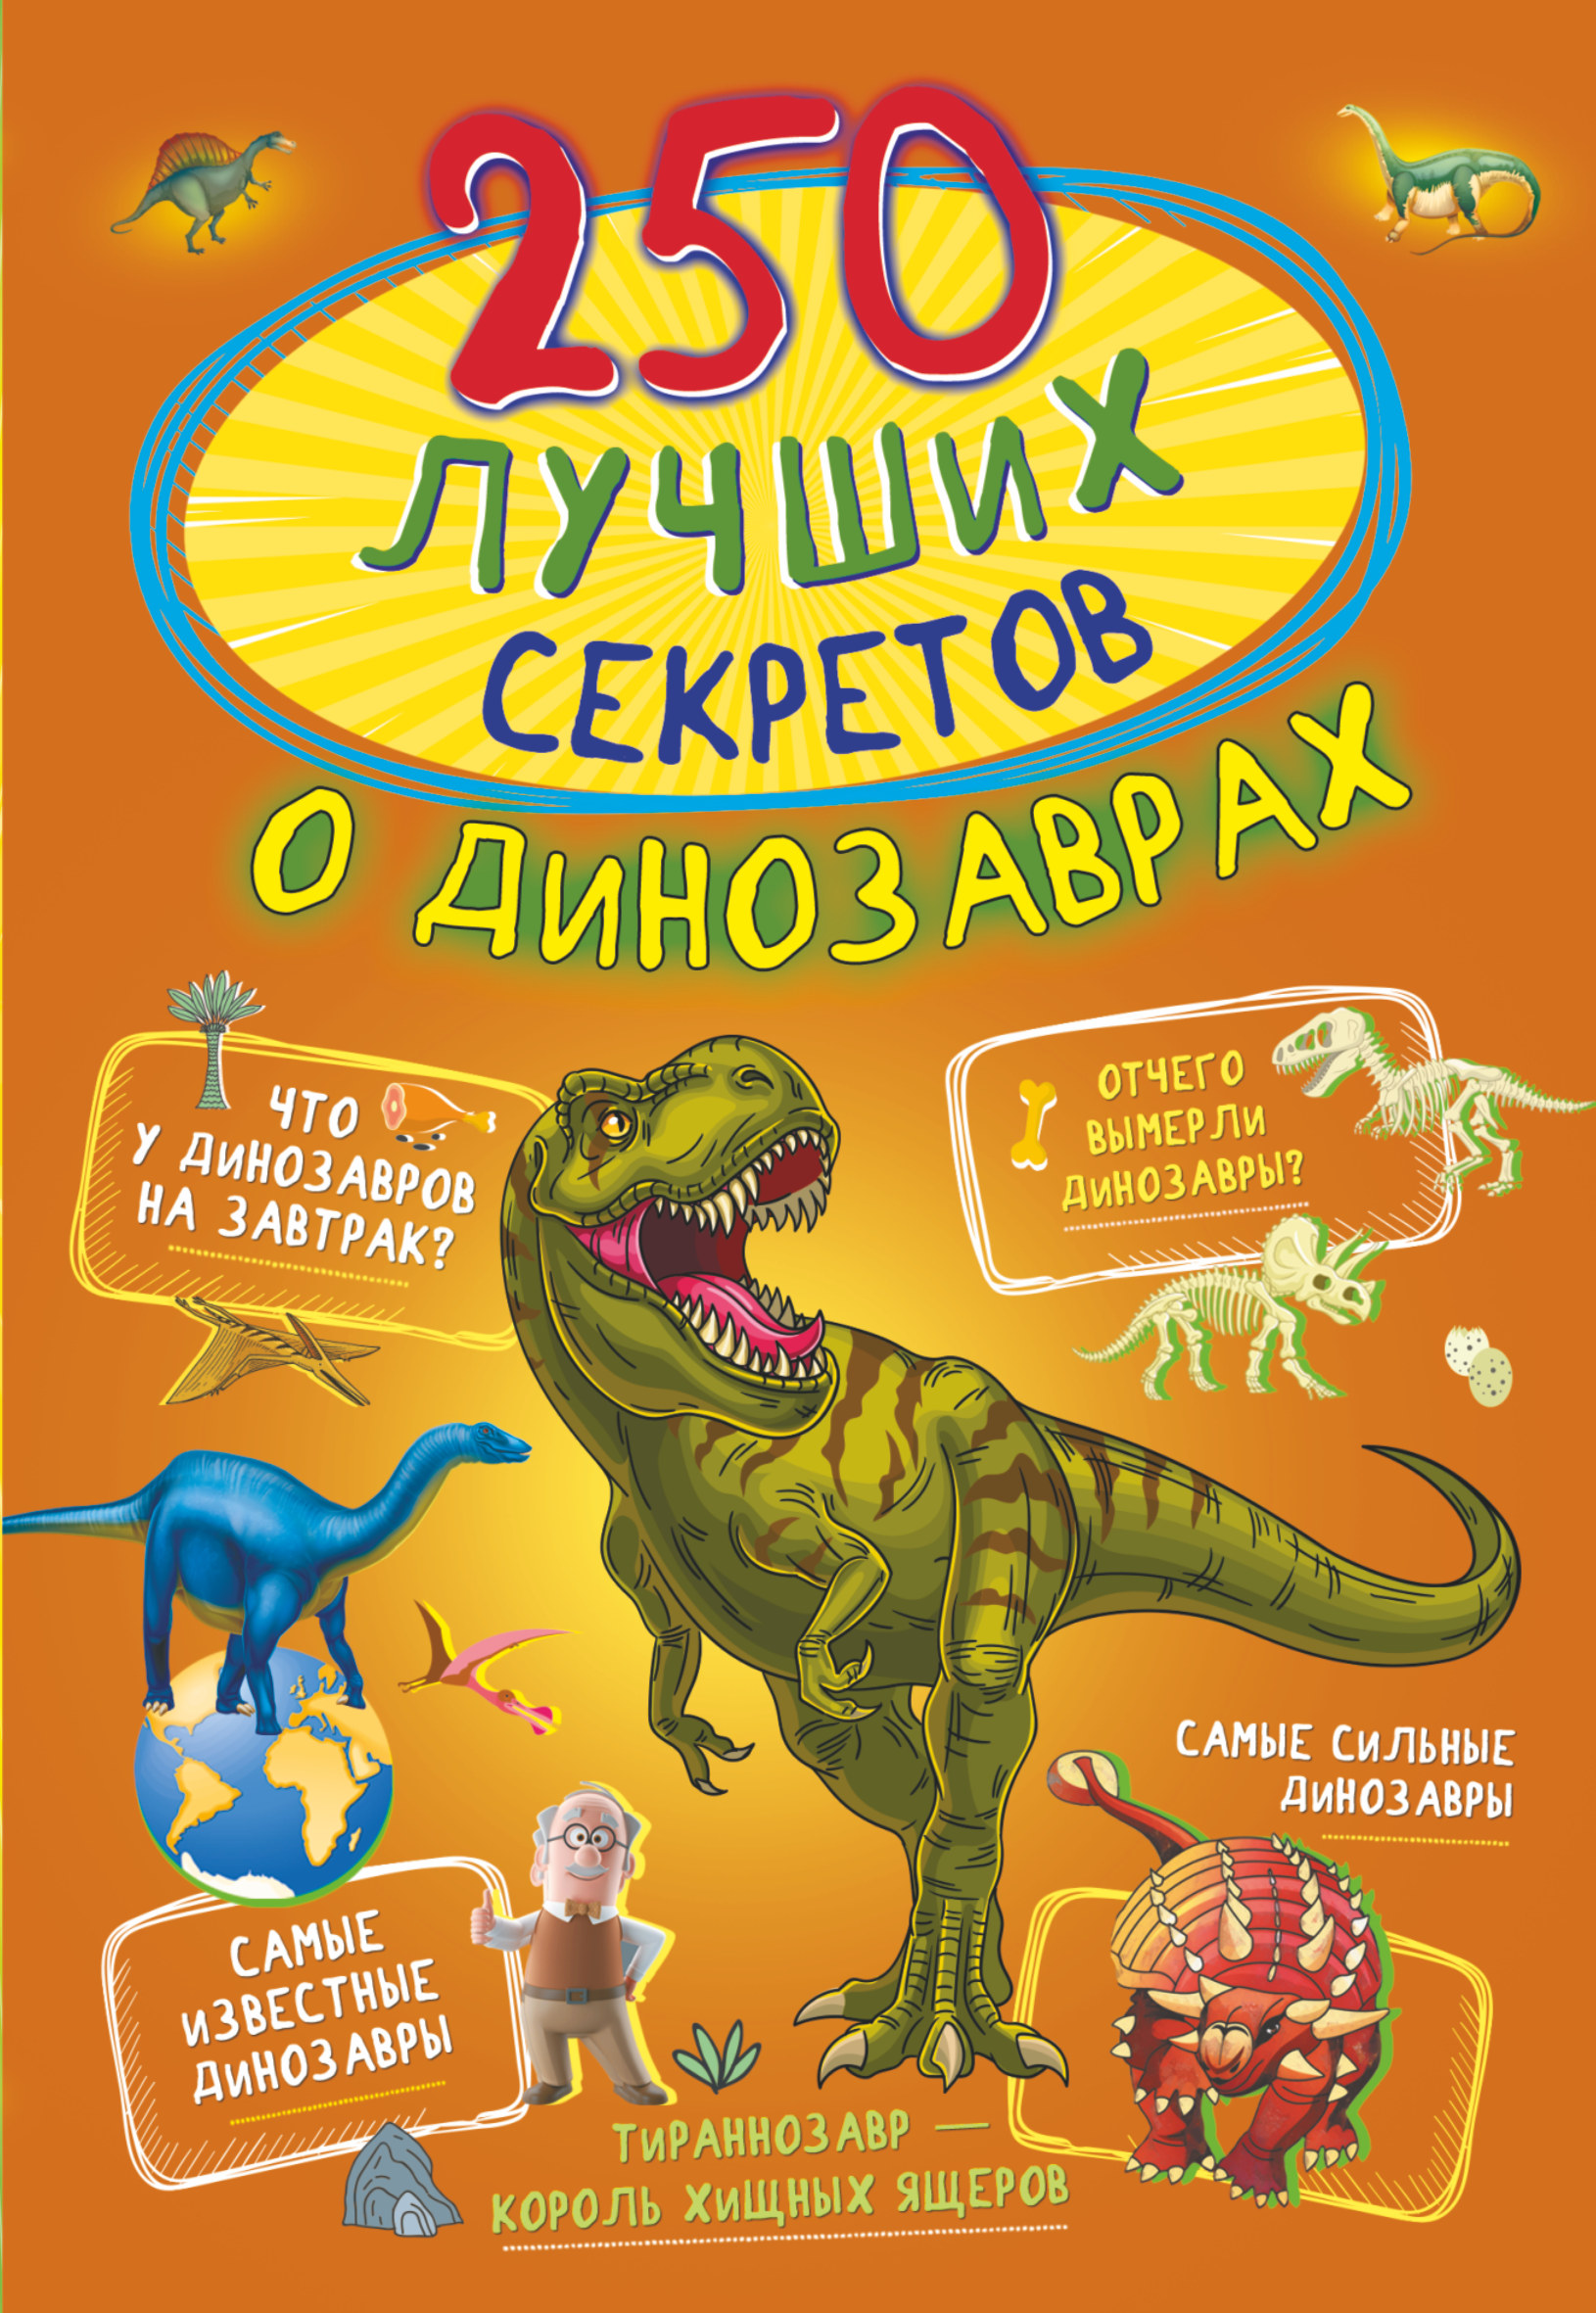 цена Прудник Анастасия Александровна 250 лучших секретов о динозаврах